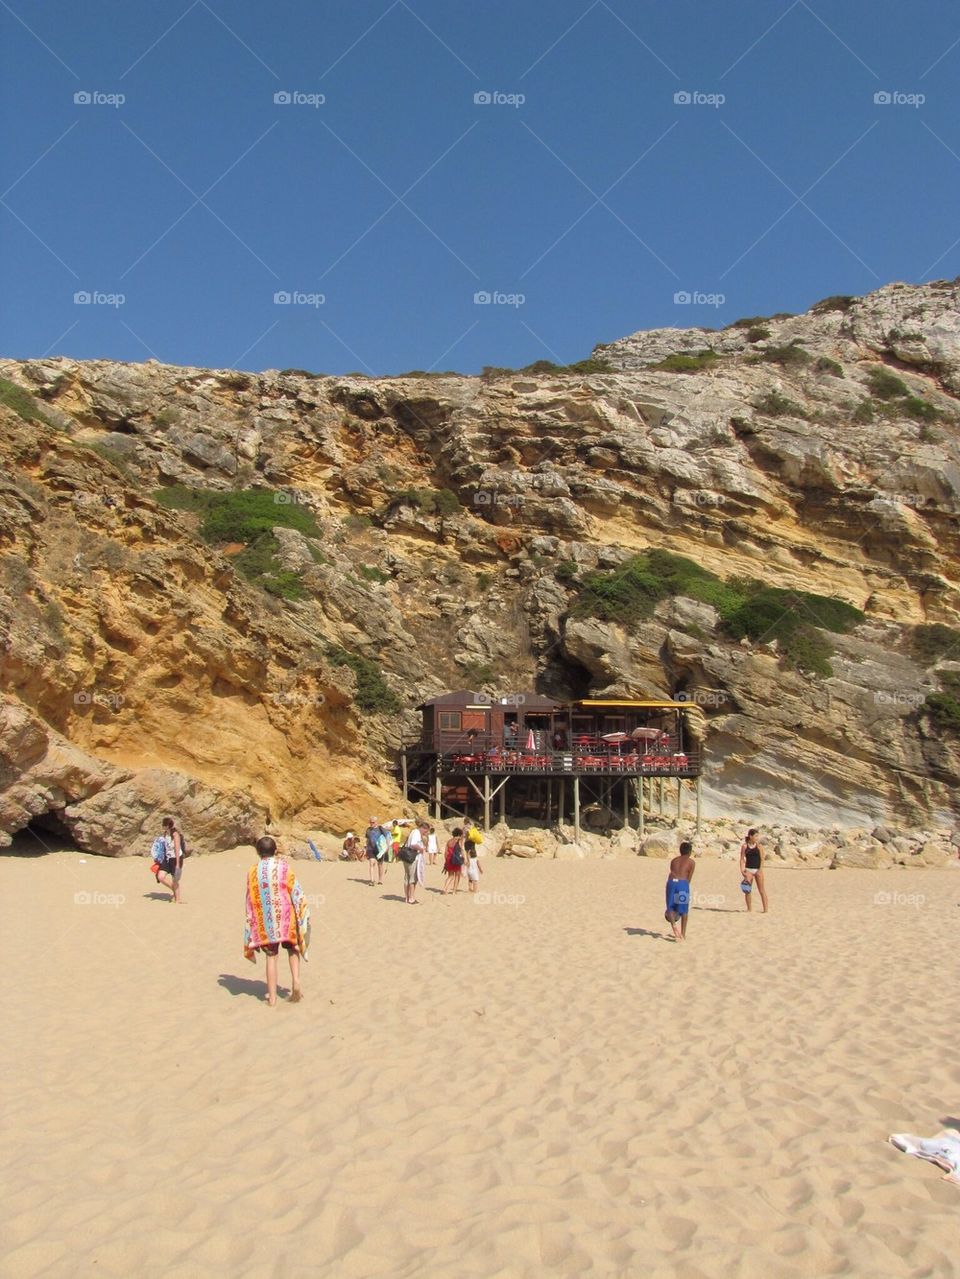 Beach restaurant, Portugal